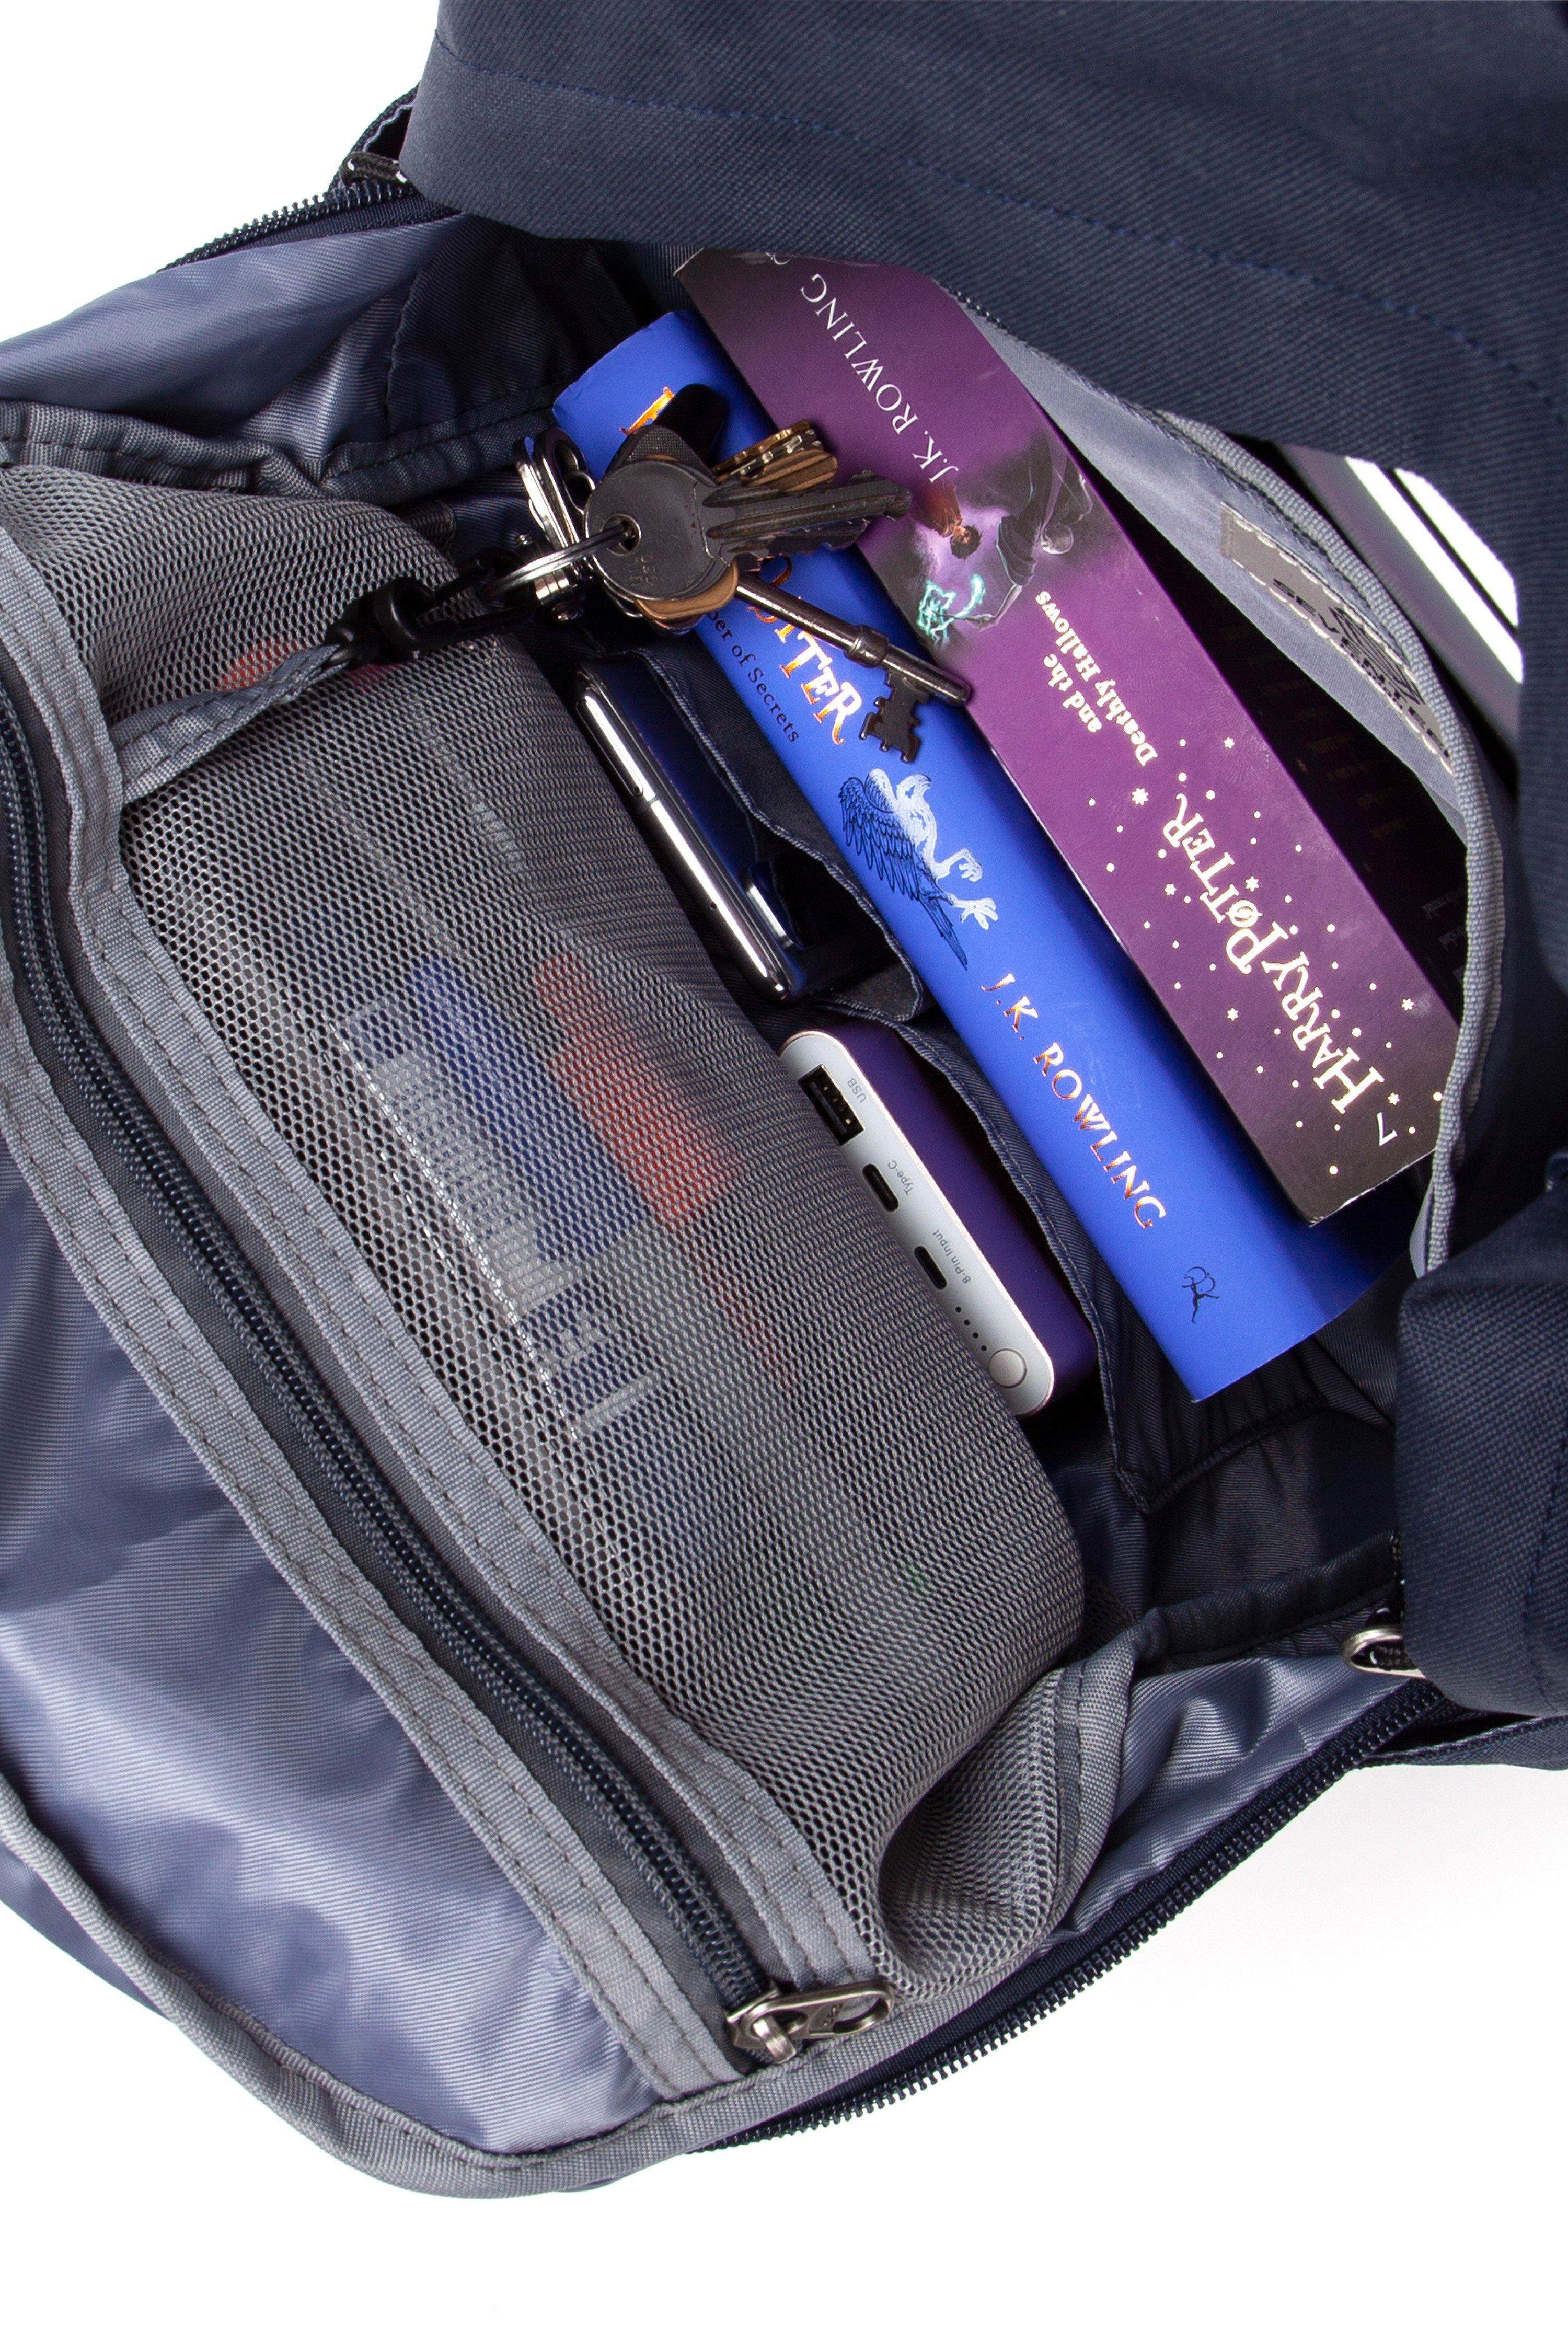 Pin by Chelsea Parker on Bags  Backpacks, Cute school bags, Beachy backpack